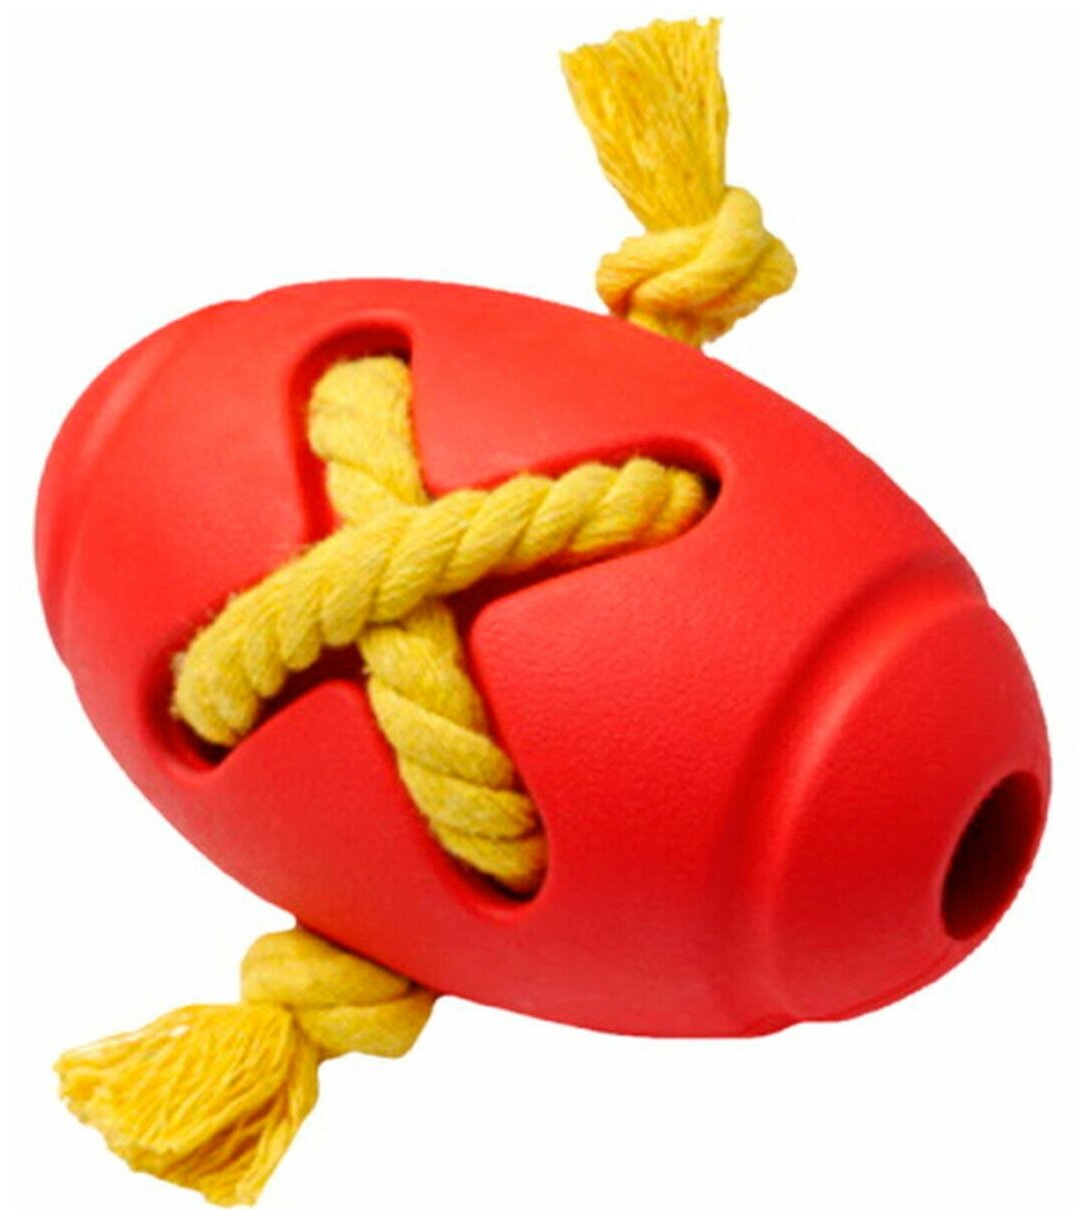 HOMEPET SILVER SERIES Ф 8 см х 12,7 см игрушка для собак мяч регби с канатом красный каучук